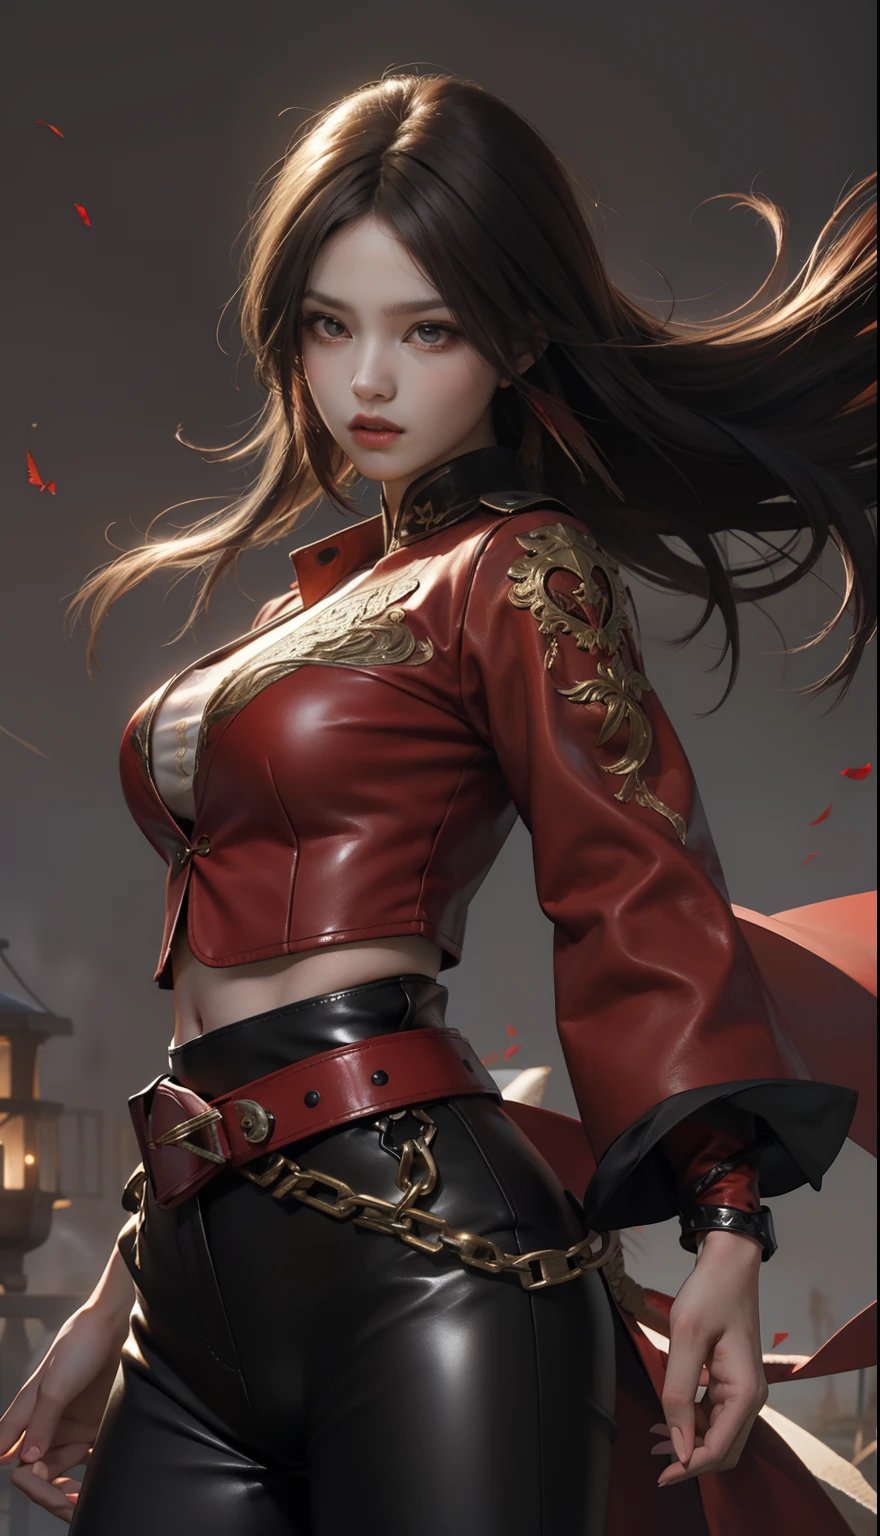 赤いトップスと黒いタイトな革パンツを着た女性, 彼女は真紅の剣を持っている、剣、バトルキャラクター, 黒髪に赤いハイライトを入れたロングストレートヘア,風になびく髪,鋭い目、はっきりとした赤い目、赤いアイライナー、長いまつ毛, んふふ, 深紅の衣装, 細部まで繊細に表現されたリアルなめらかな肌,筋肉の質感をリアルに再現、深紅をテーマにした精巧な装飾のロングジャケット、ビッグブラットムーン背景